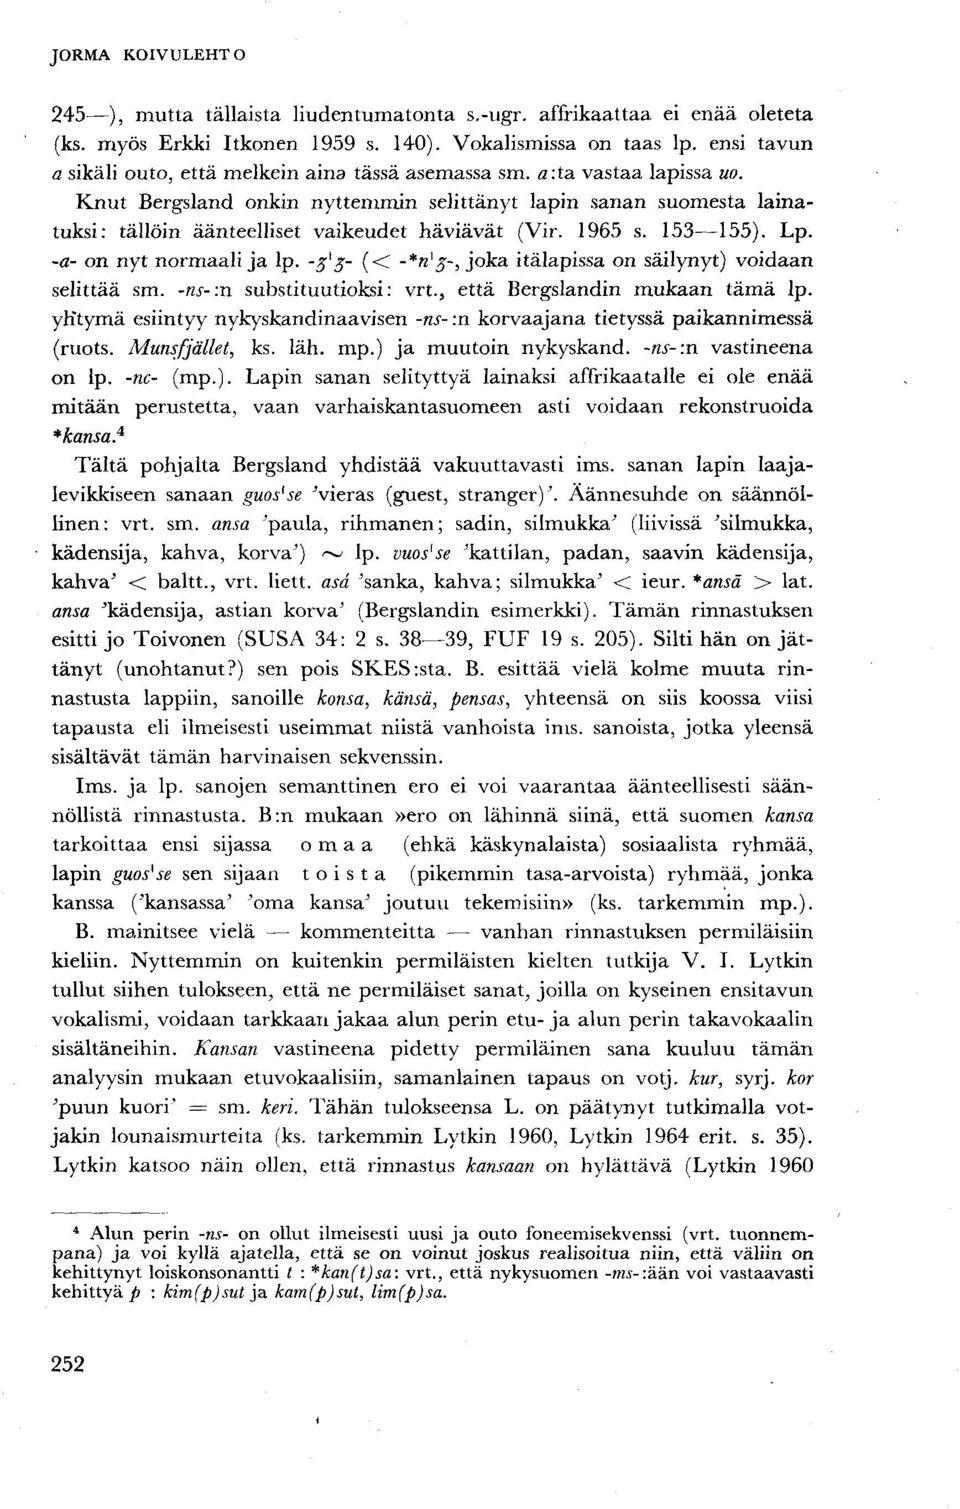 Knut Bergsland onkin nyttemmin selittänyt lapin sanan suomesta lainatuksi: tällöin äänteelliset vaikeudet häviävät (Vir. 1965 s. 153 155). Lp. -a- on nyt normaali ja lp.